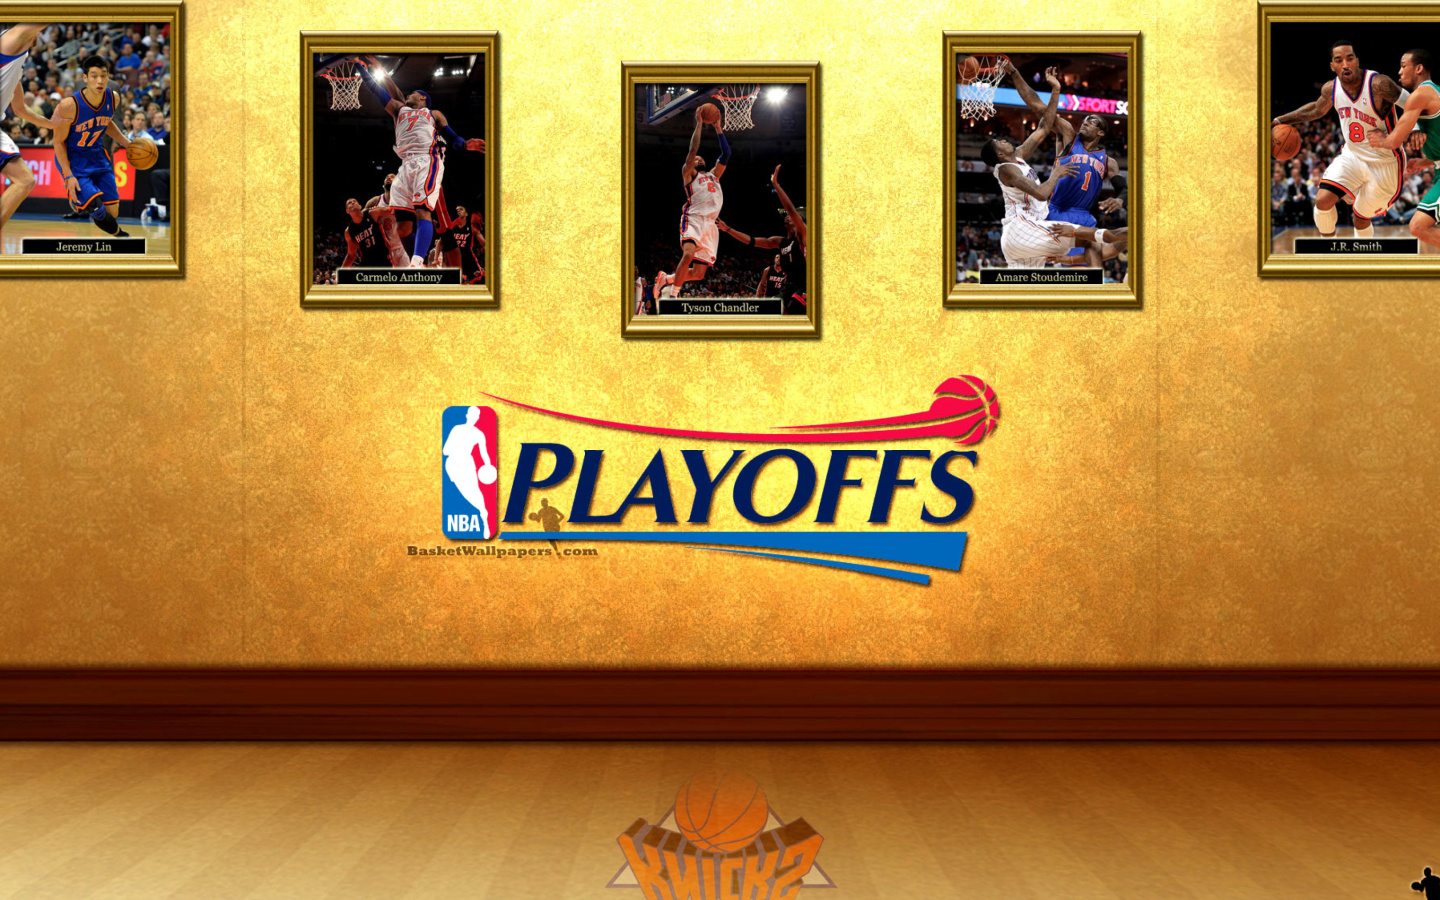 New York Knicks NBA Playoffs wallpaper 1440x900